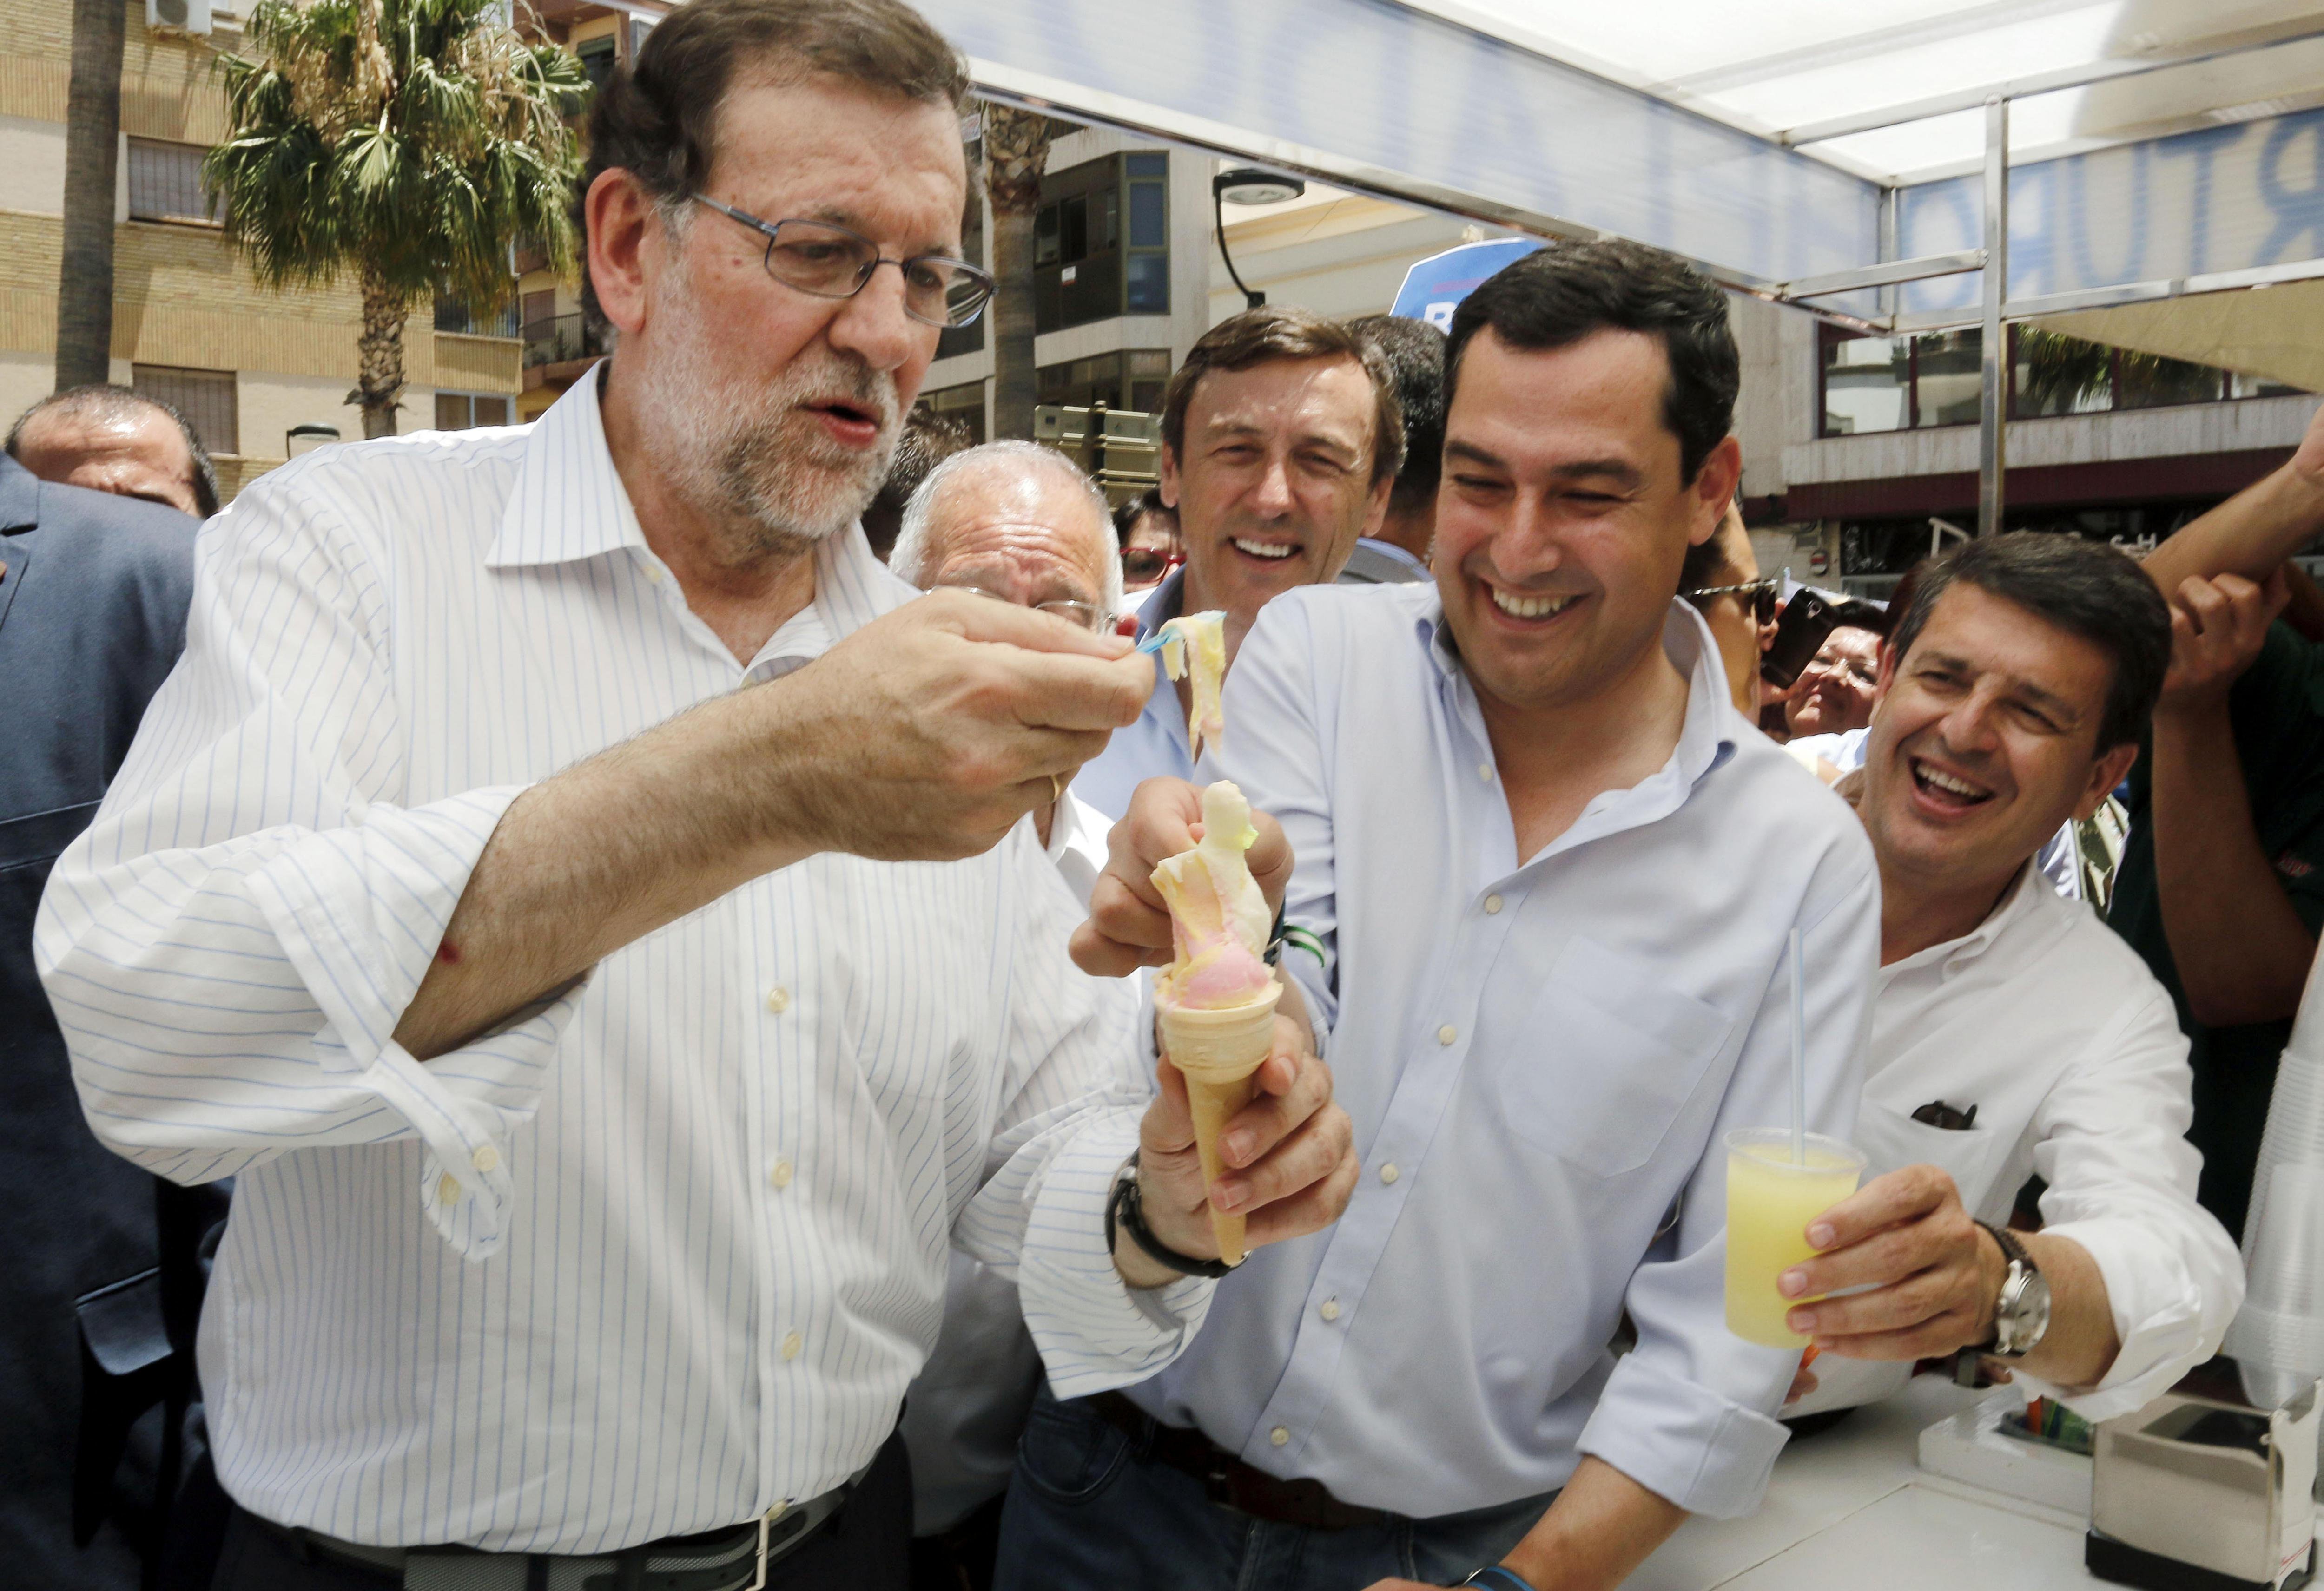 Allioli, pa amb tomàquet, marisc i suflé: el menú diari de Rajoy a Santa Pola